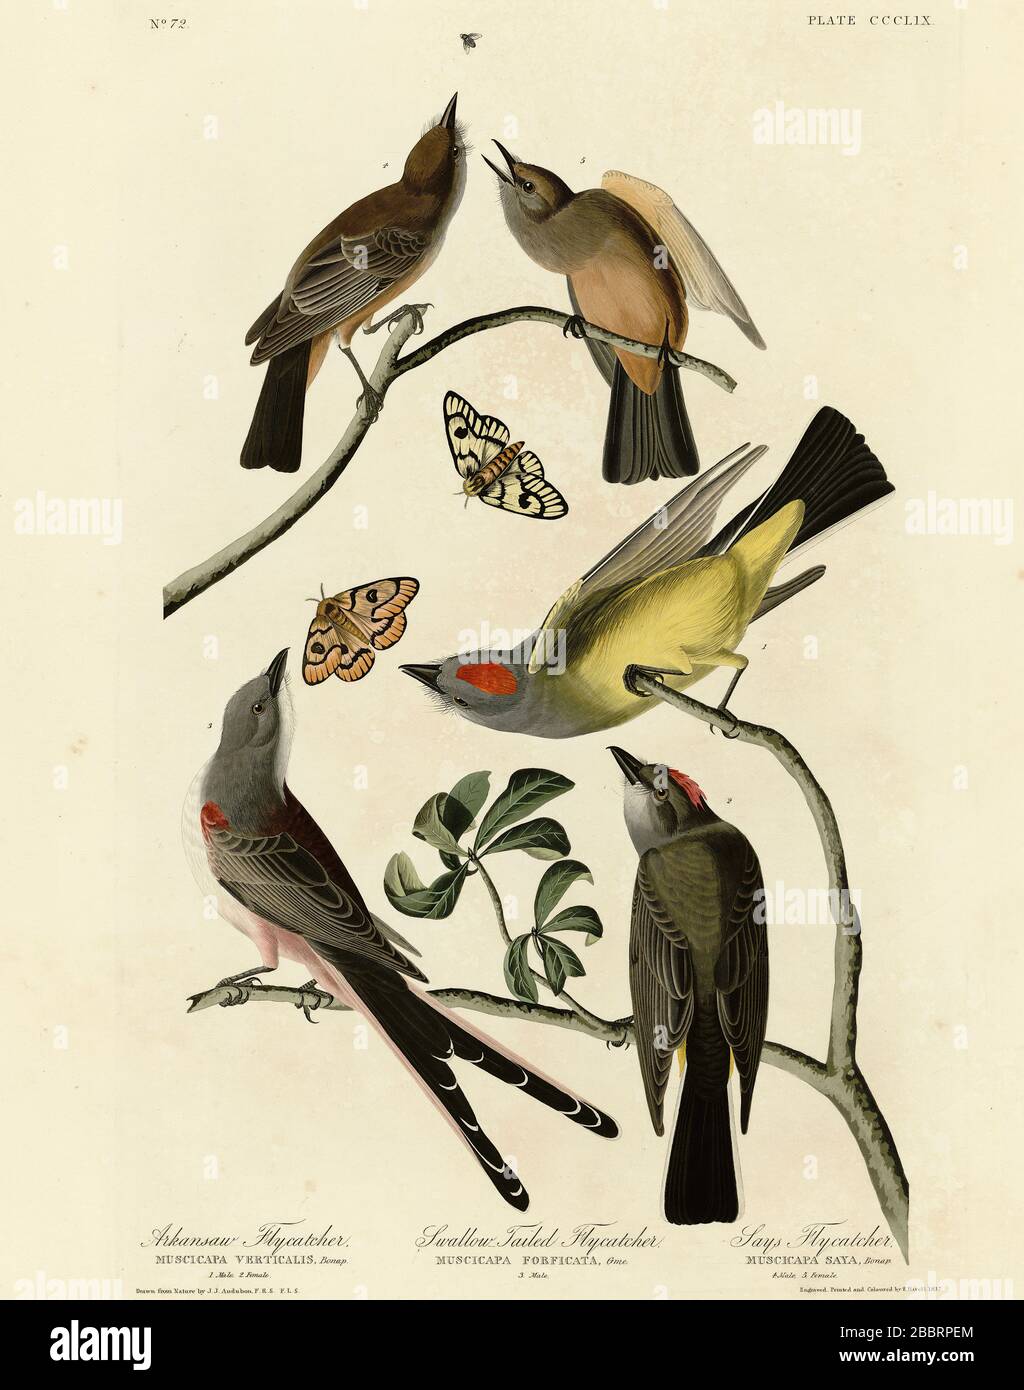 Plate 359 Arkansaw Flycatcher, Swallow-Tailed Flycatcher, Says Flycatcher (Western Kingbird, Scissor-tailed Flycatcher, Say's Phoebe) Audubon's Birds Stock Photo